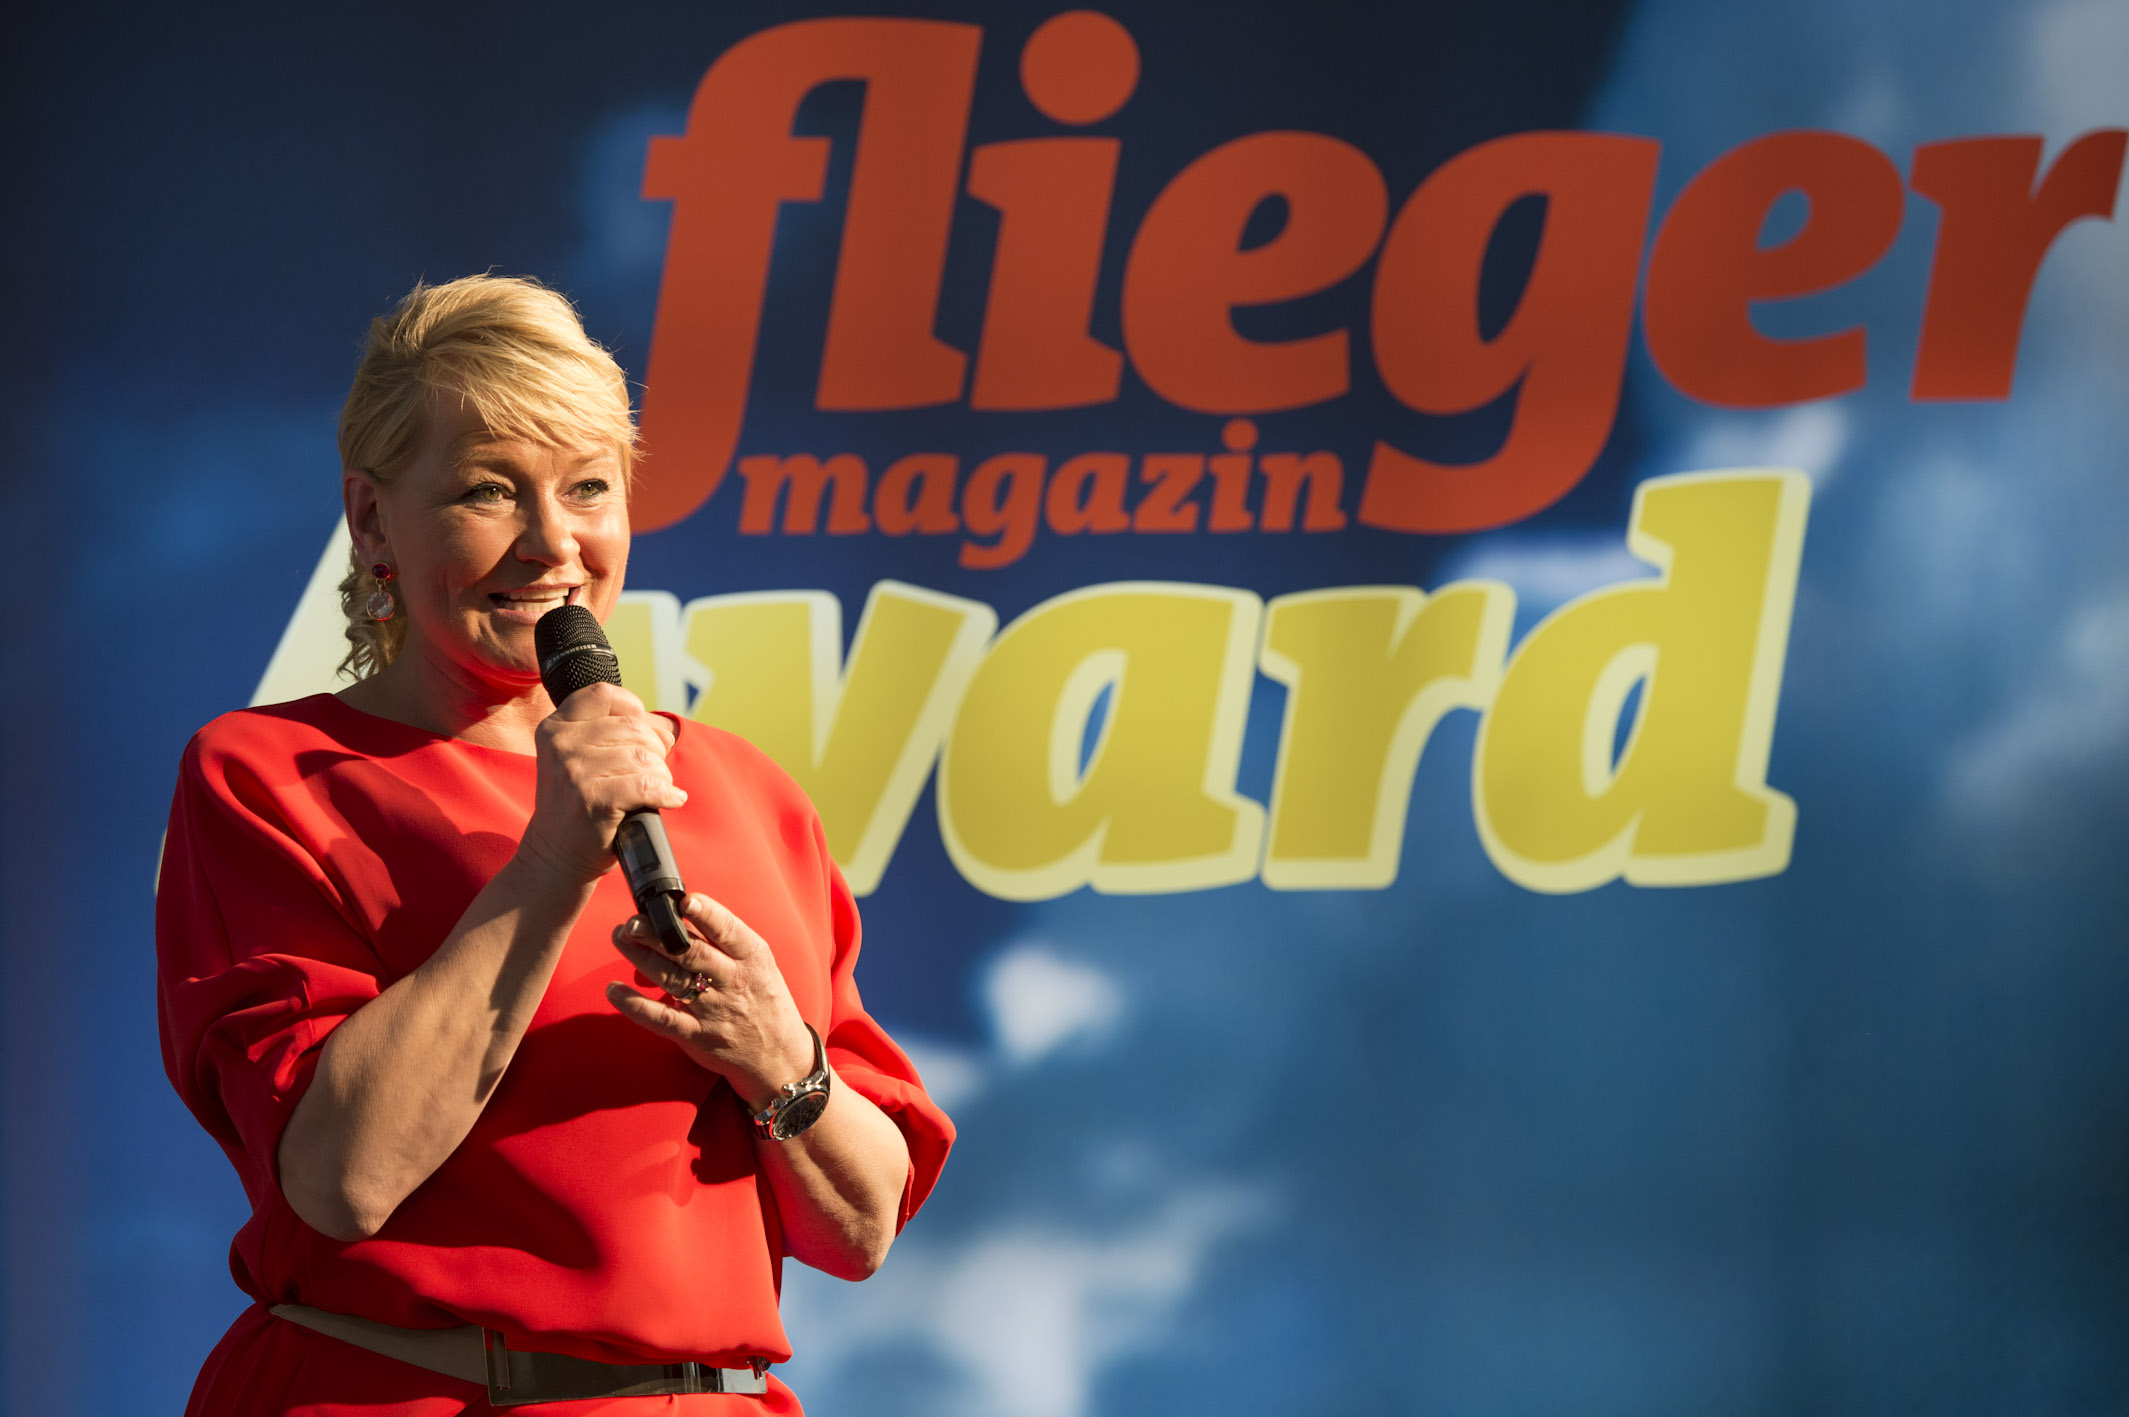 Stilvoll: Verlegerin Alexandra Jahr begrüßt die geladenen Gäste zum ersten fliegermagazin Award in Friedrichshafen